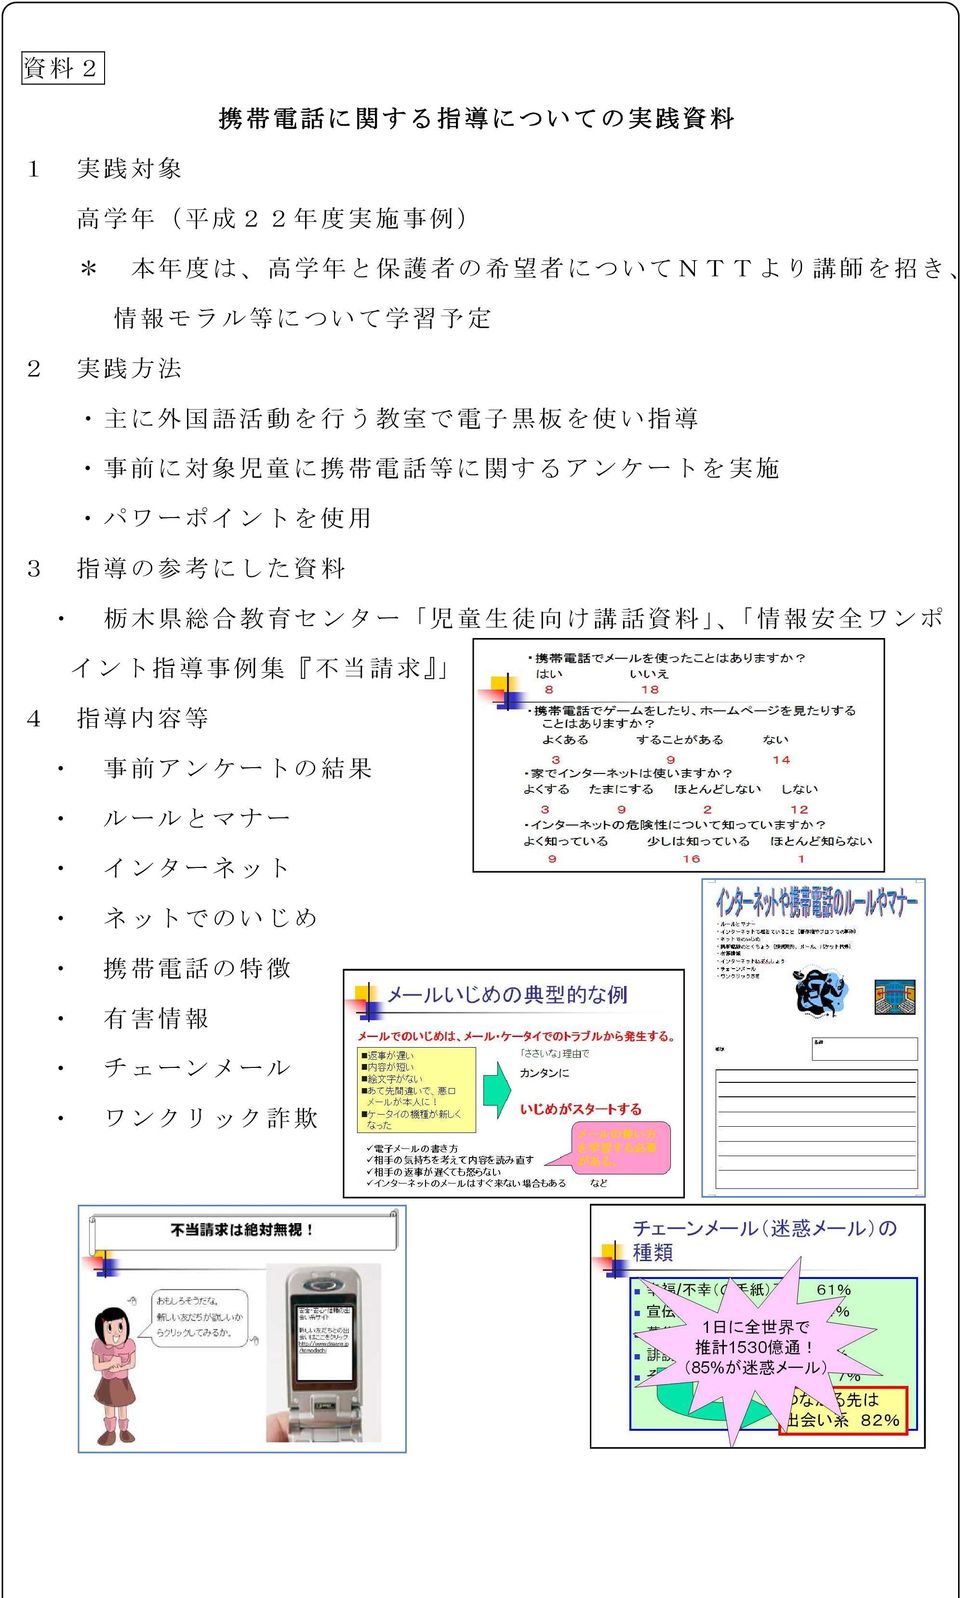 に 携 帯 電 話 等 に 関 するアンケートを 実 施 パワーポイントを 使 用 3 指 導 の 参 考 にした 資 料 栃 木 県 総 合 教 育 センター 児 童 生 徒 向 け 講 話 資 料 情 報 安 全